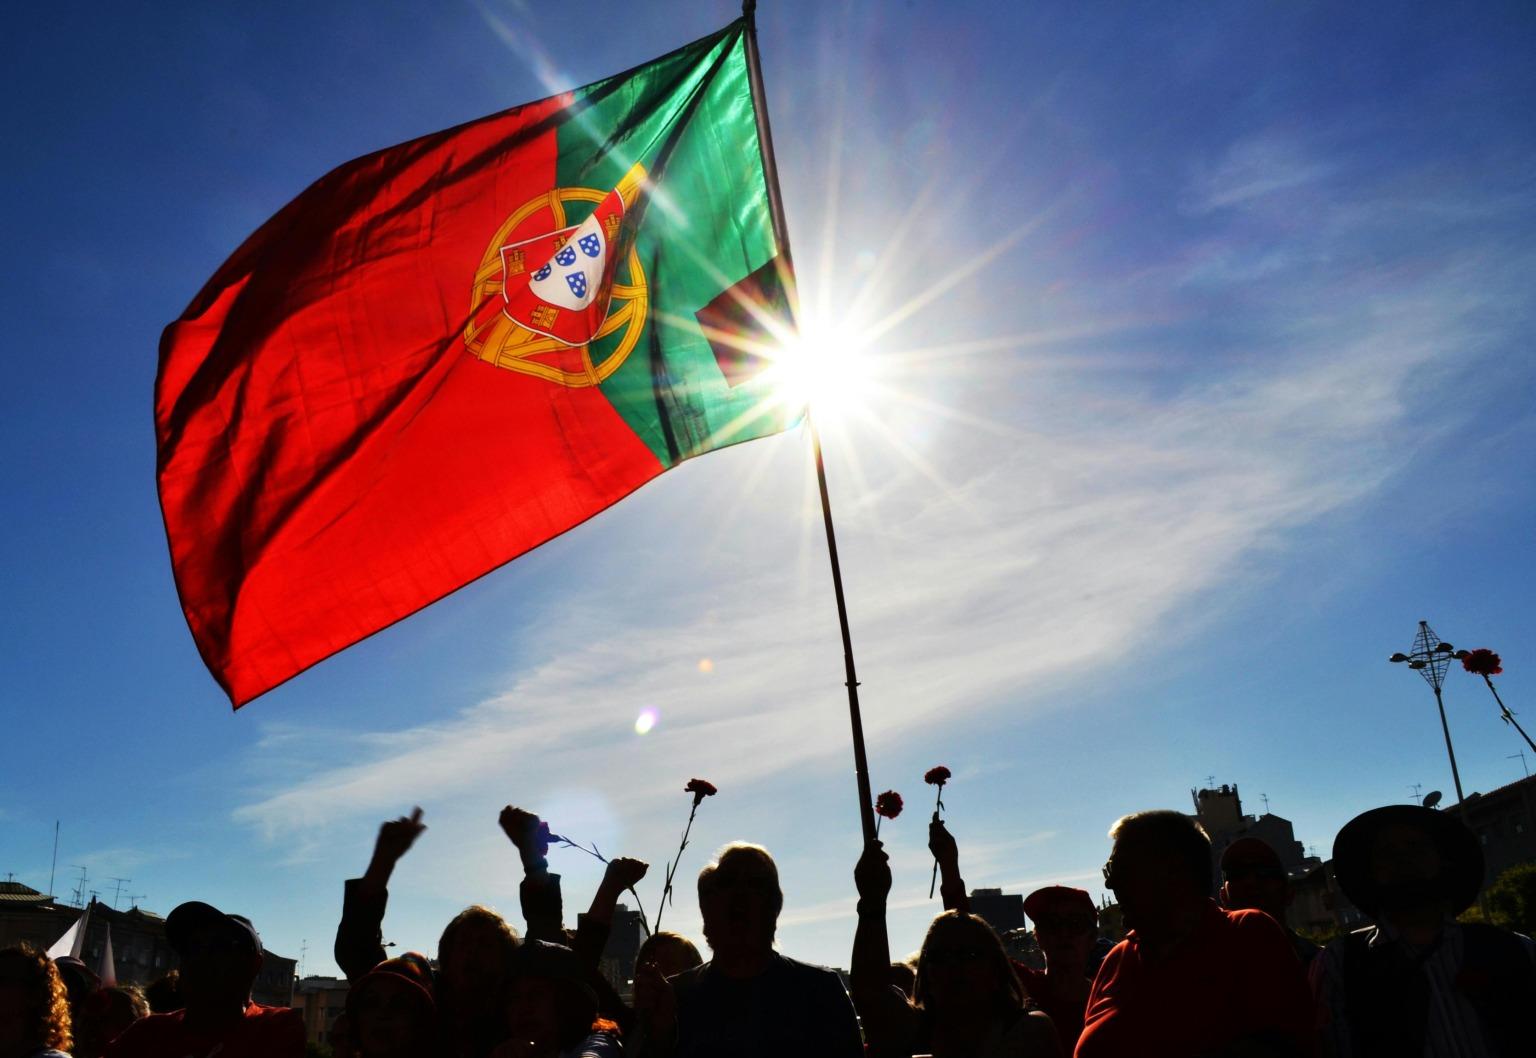 Bandera portuguesa ondeando con gente sosteniendo claveles en celebración de la Revolución de los Claveles.